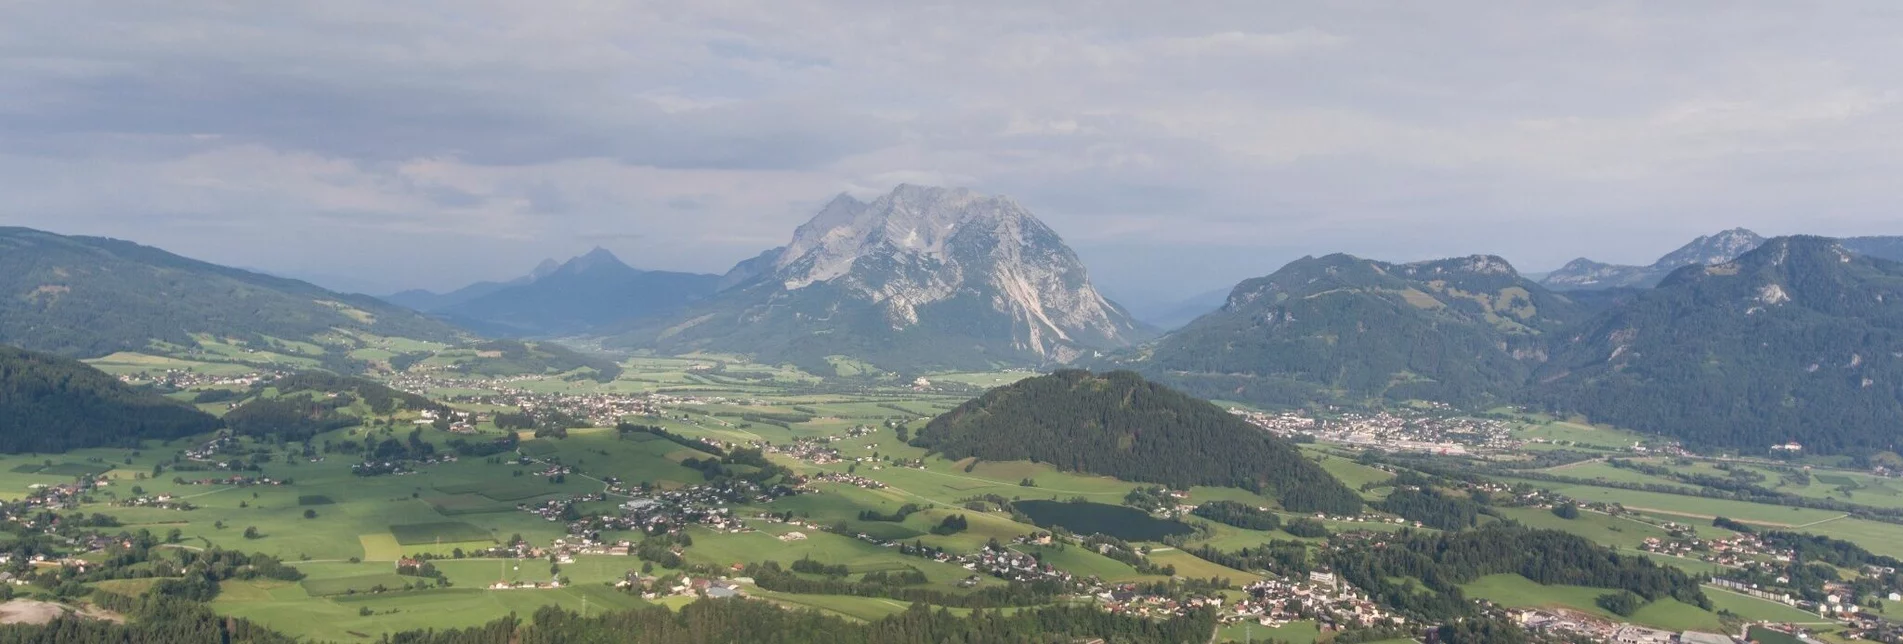 Mountainbike Aigen Runde | 24 - Touren-Impression #1 | © Erlebnisregion Schladming-Dachstein